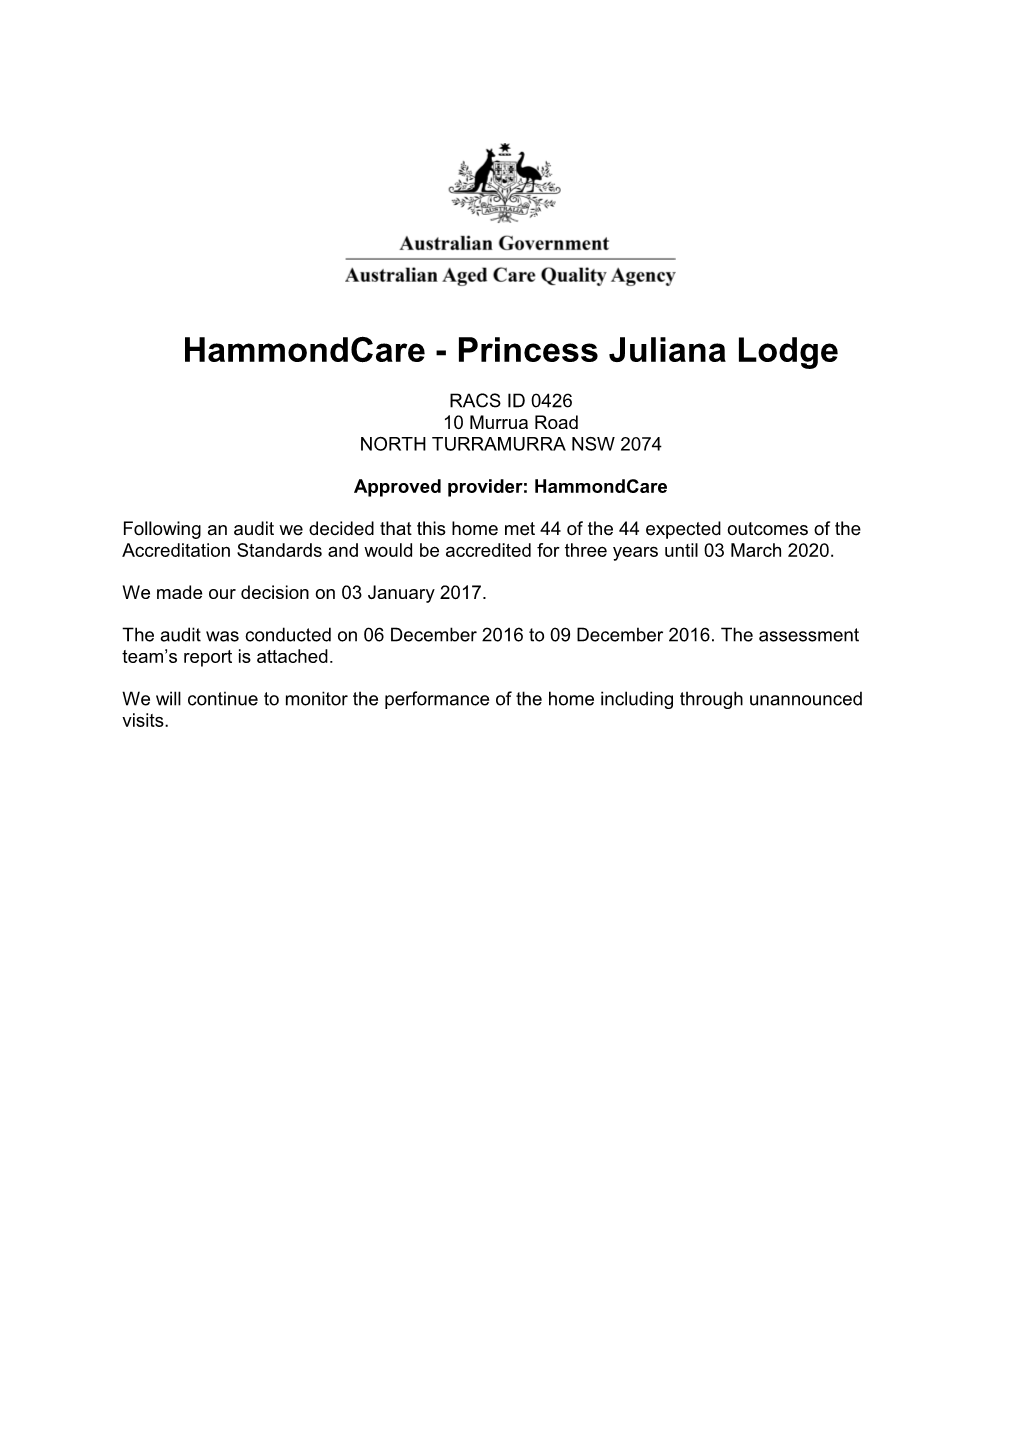 Hammondcare - Princess Juliana Lodge